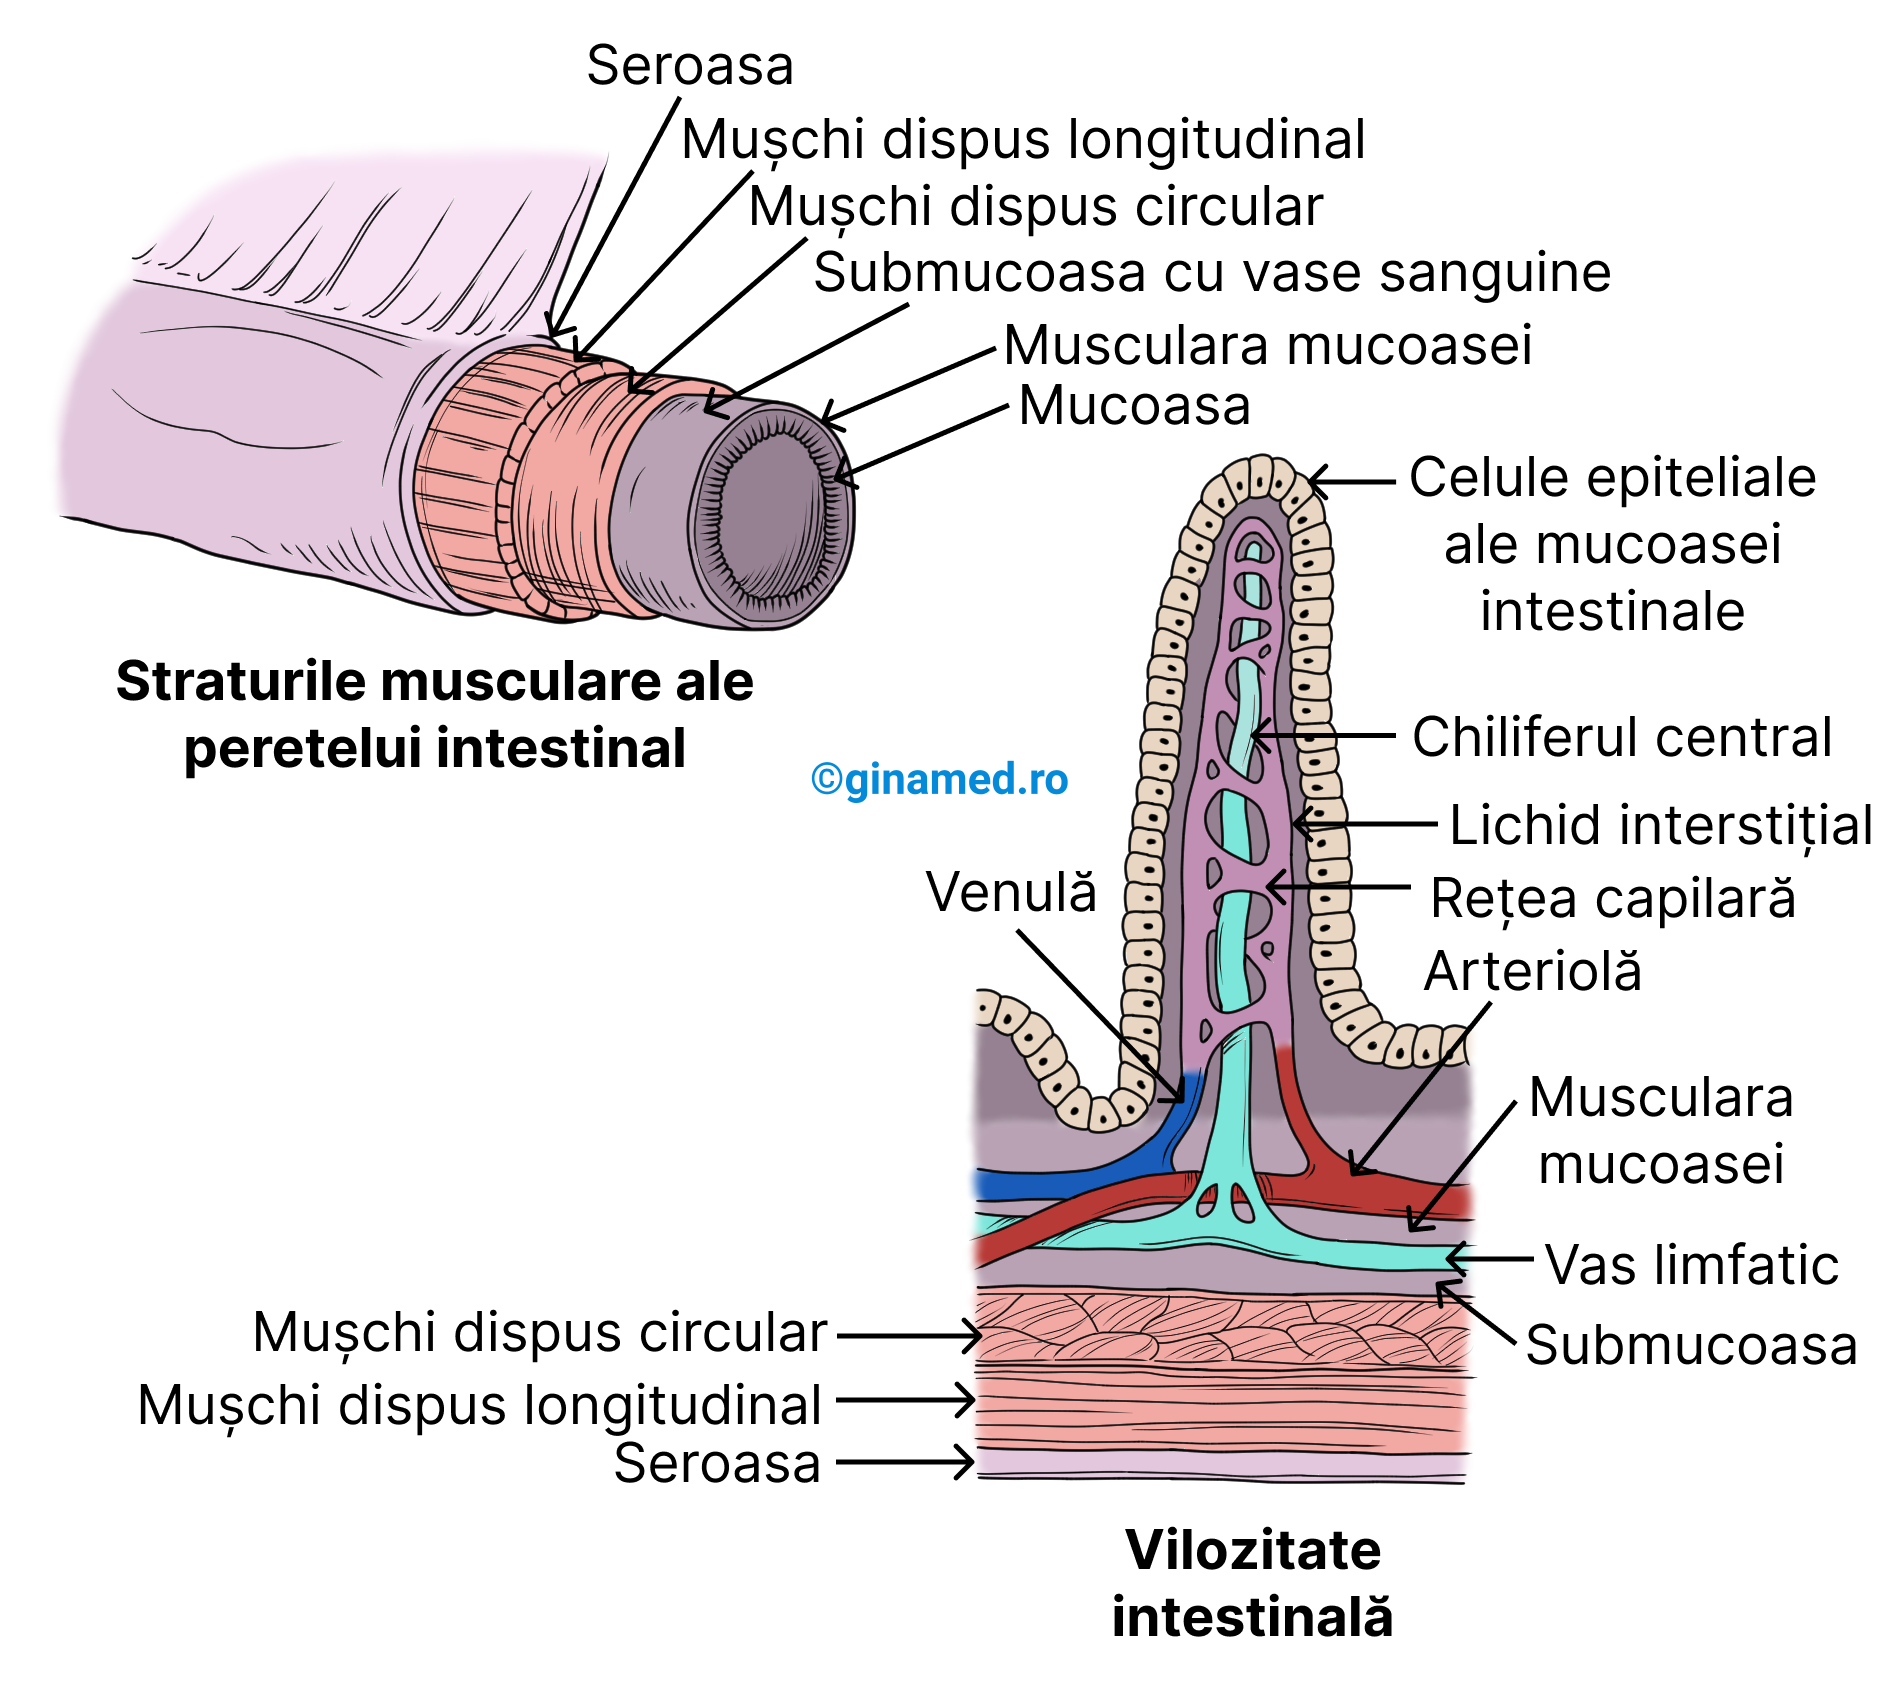 Straturile musculare ale peretelui intestinului subțire și structura unei vilozități intestinale.